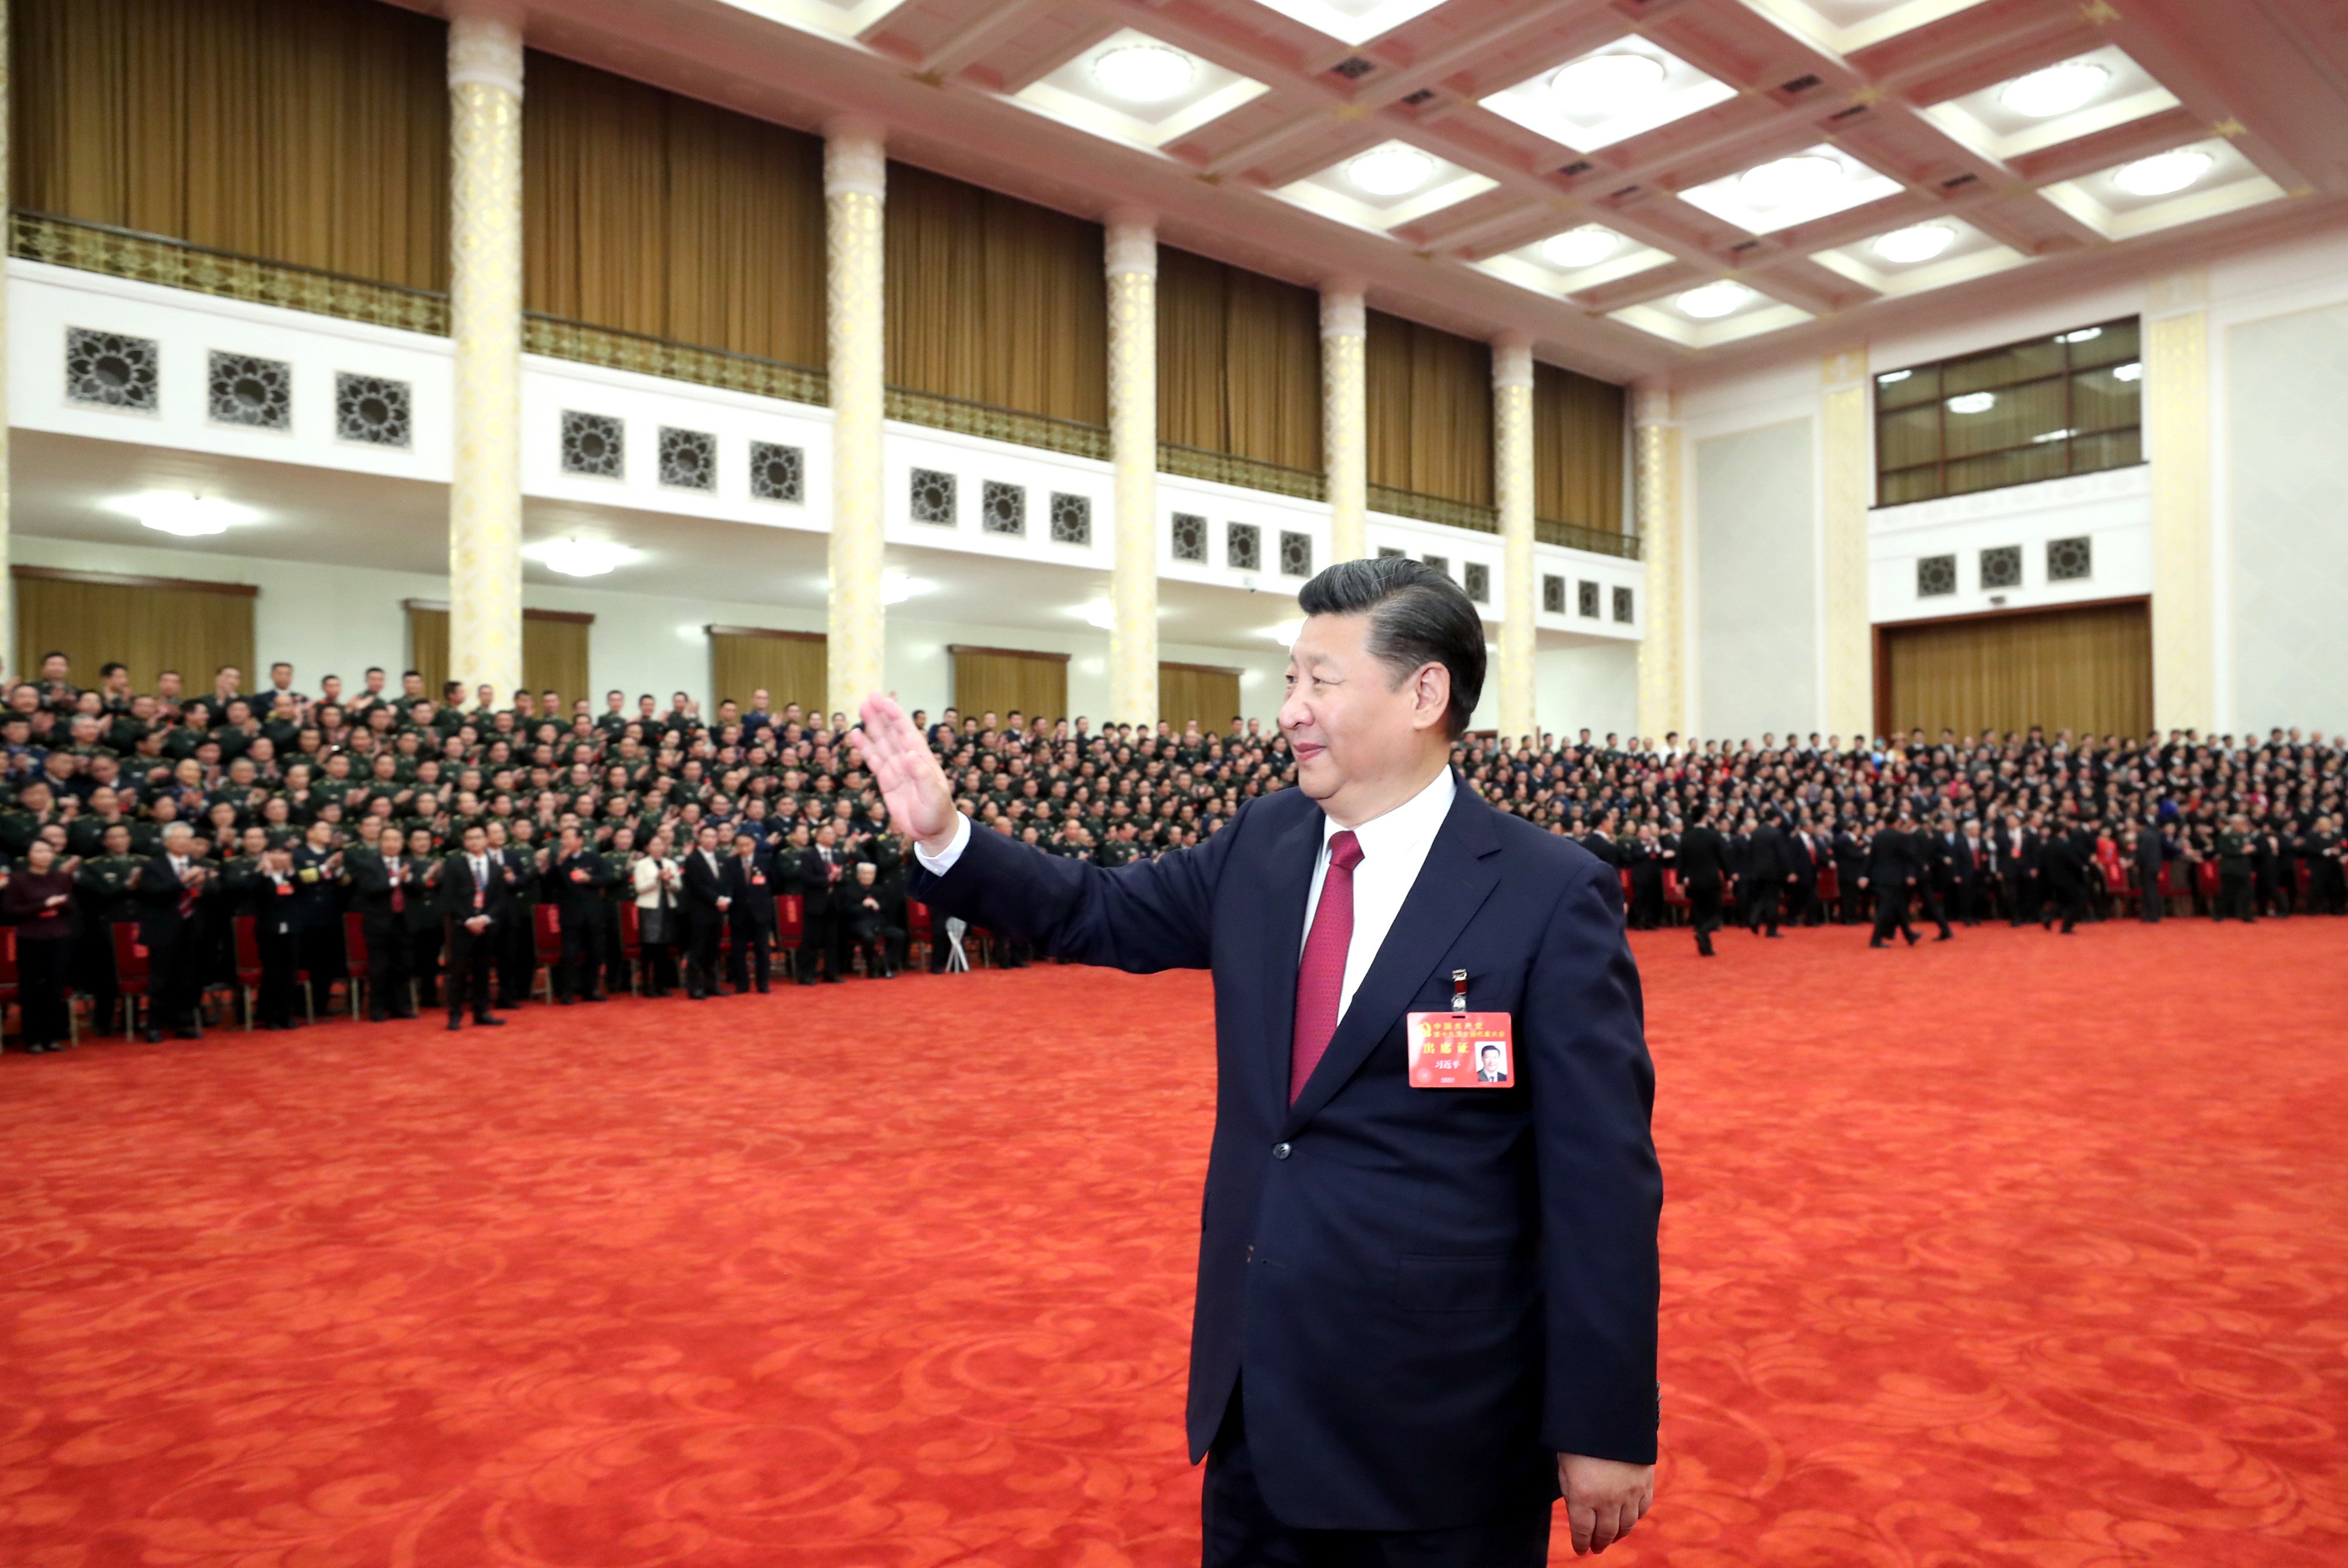 Zhejiang governor Yuan Jiajun and former Comac chairman Jin Zhuanglong join seven existing members with similar background